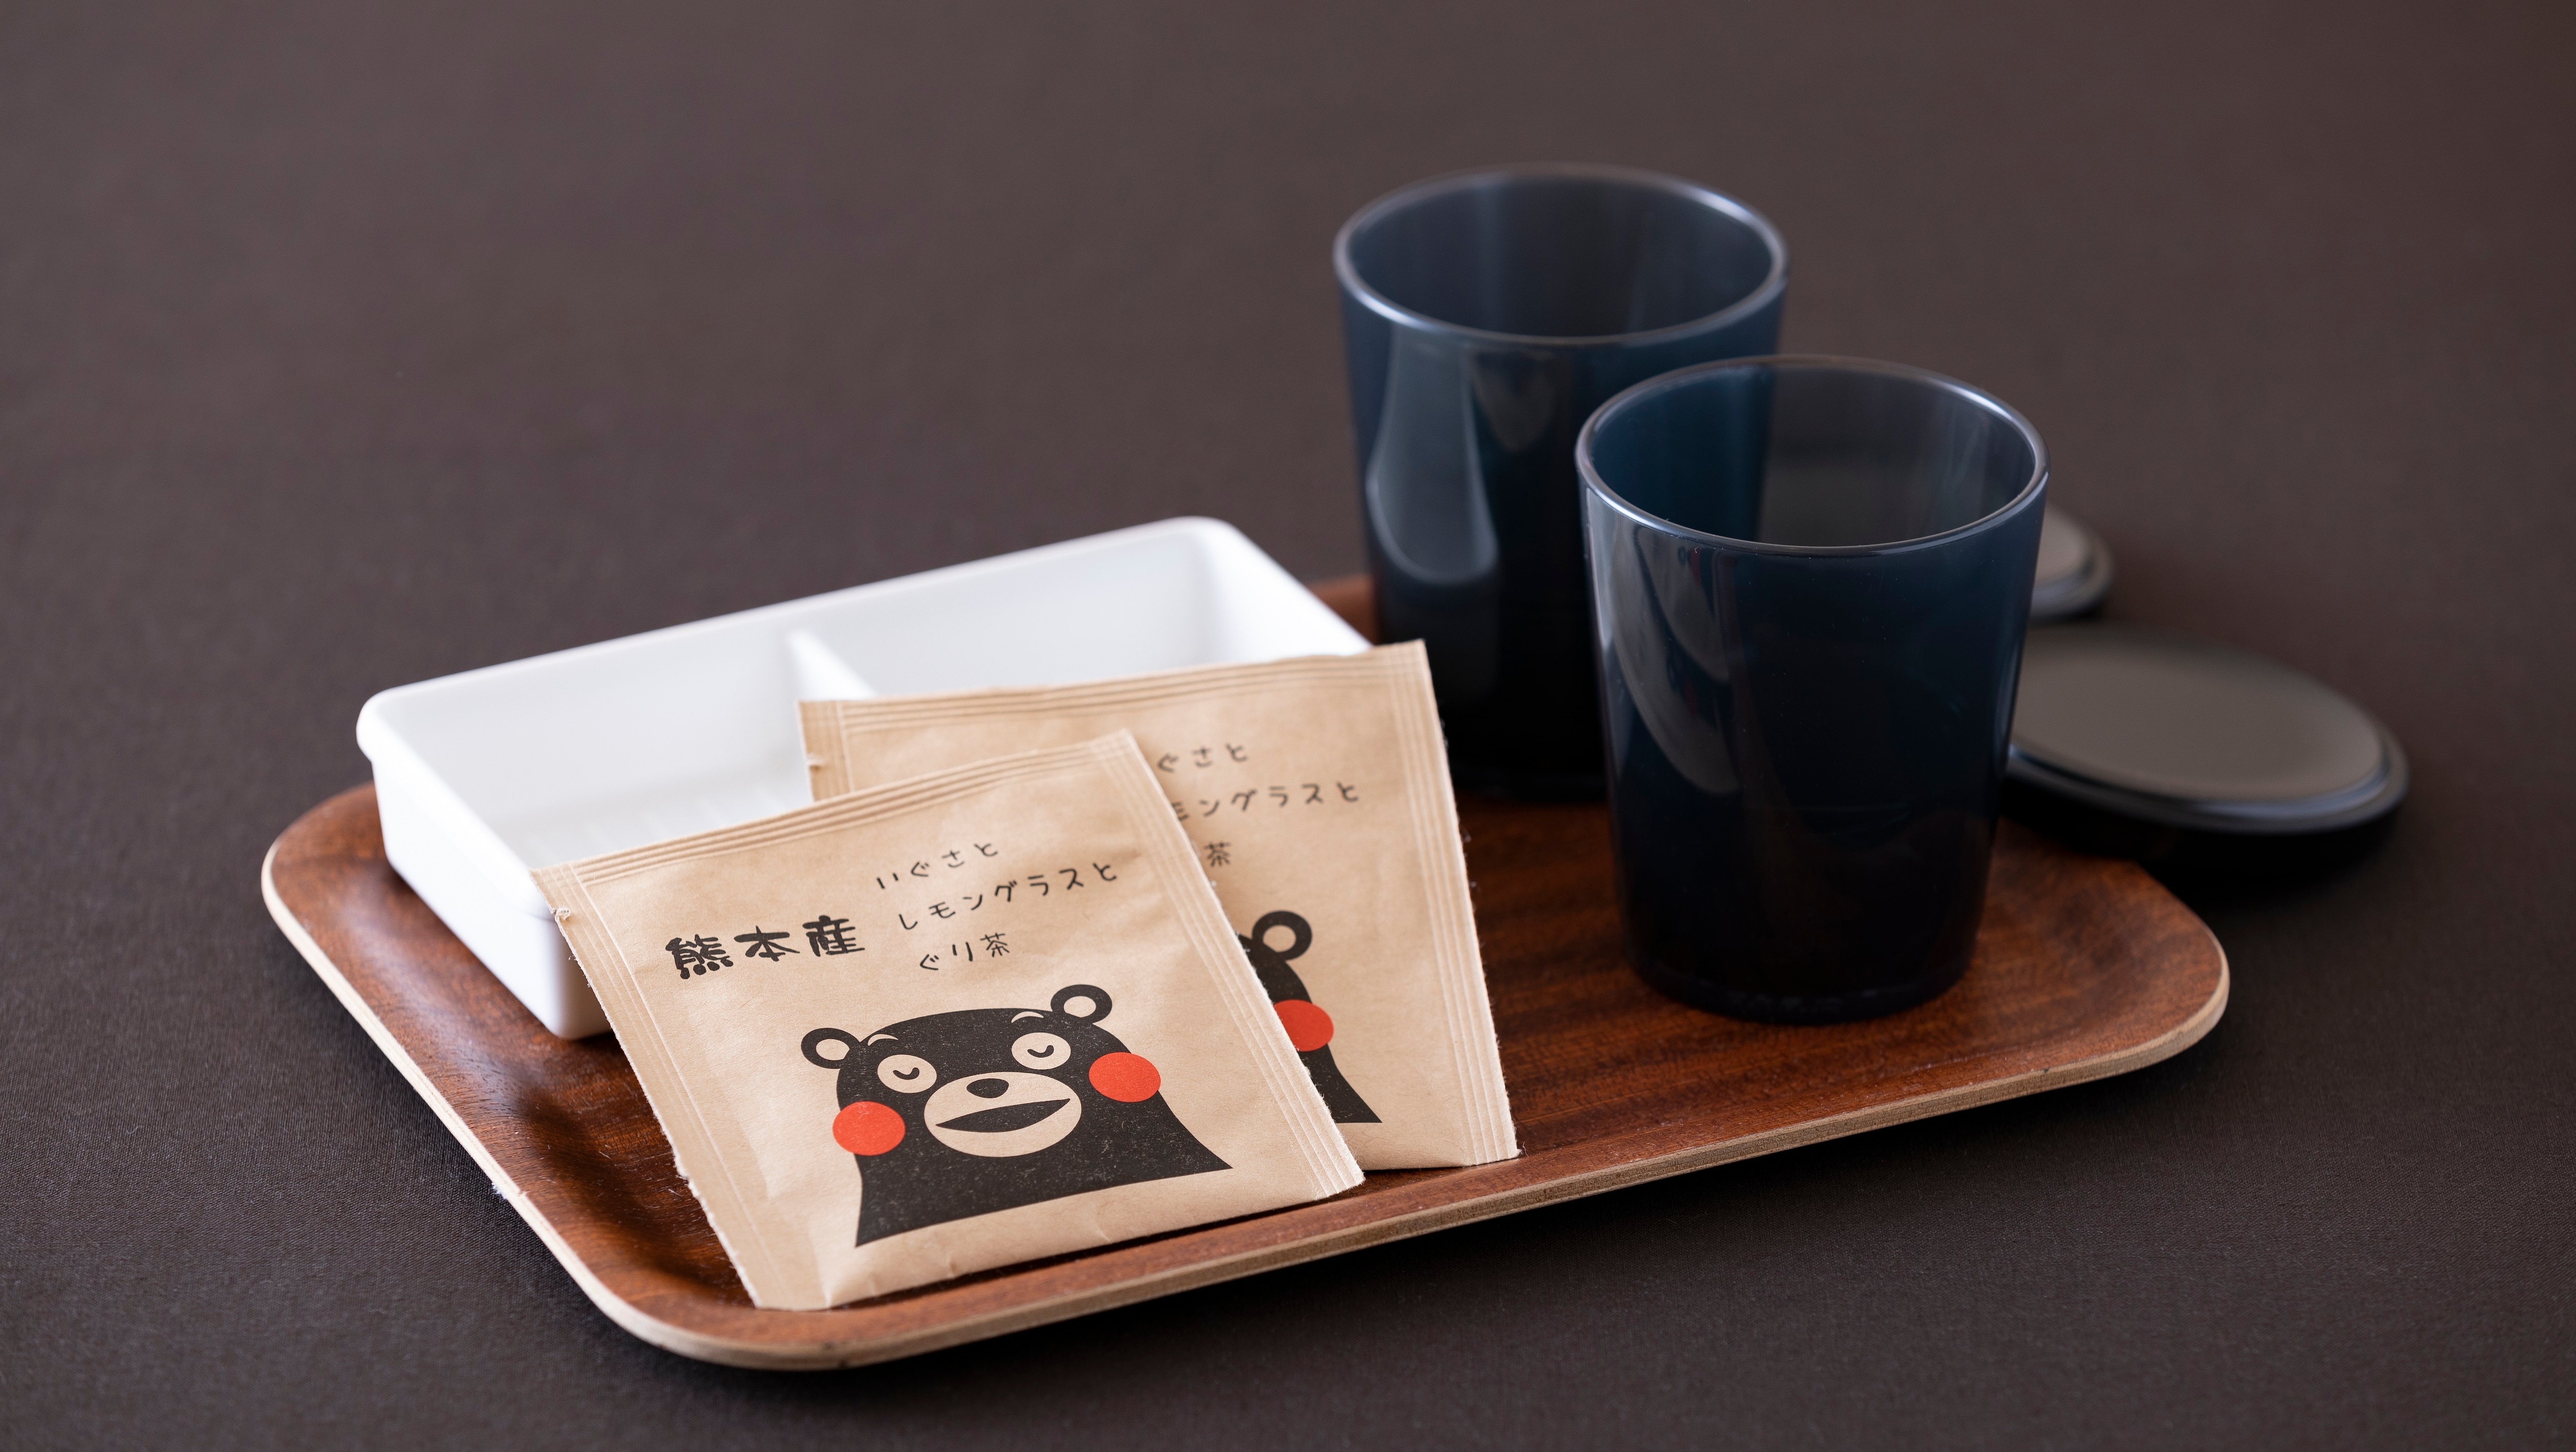 <房間設備> 茶具熊本熊是一個可愛的包裝